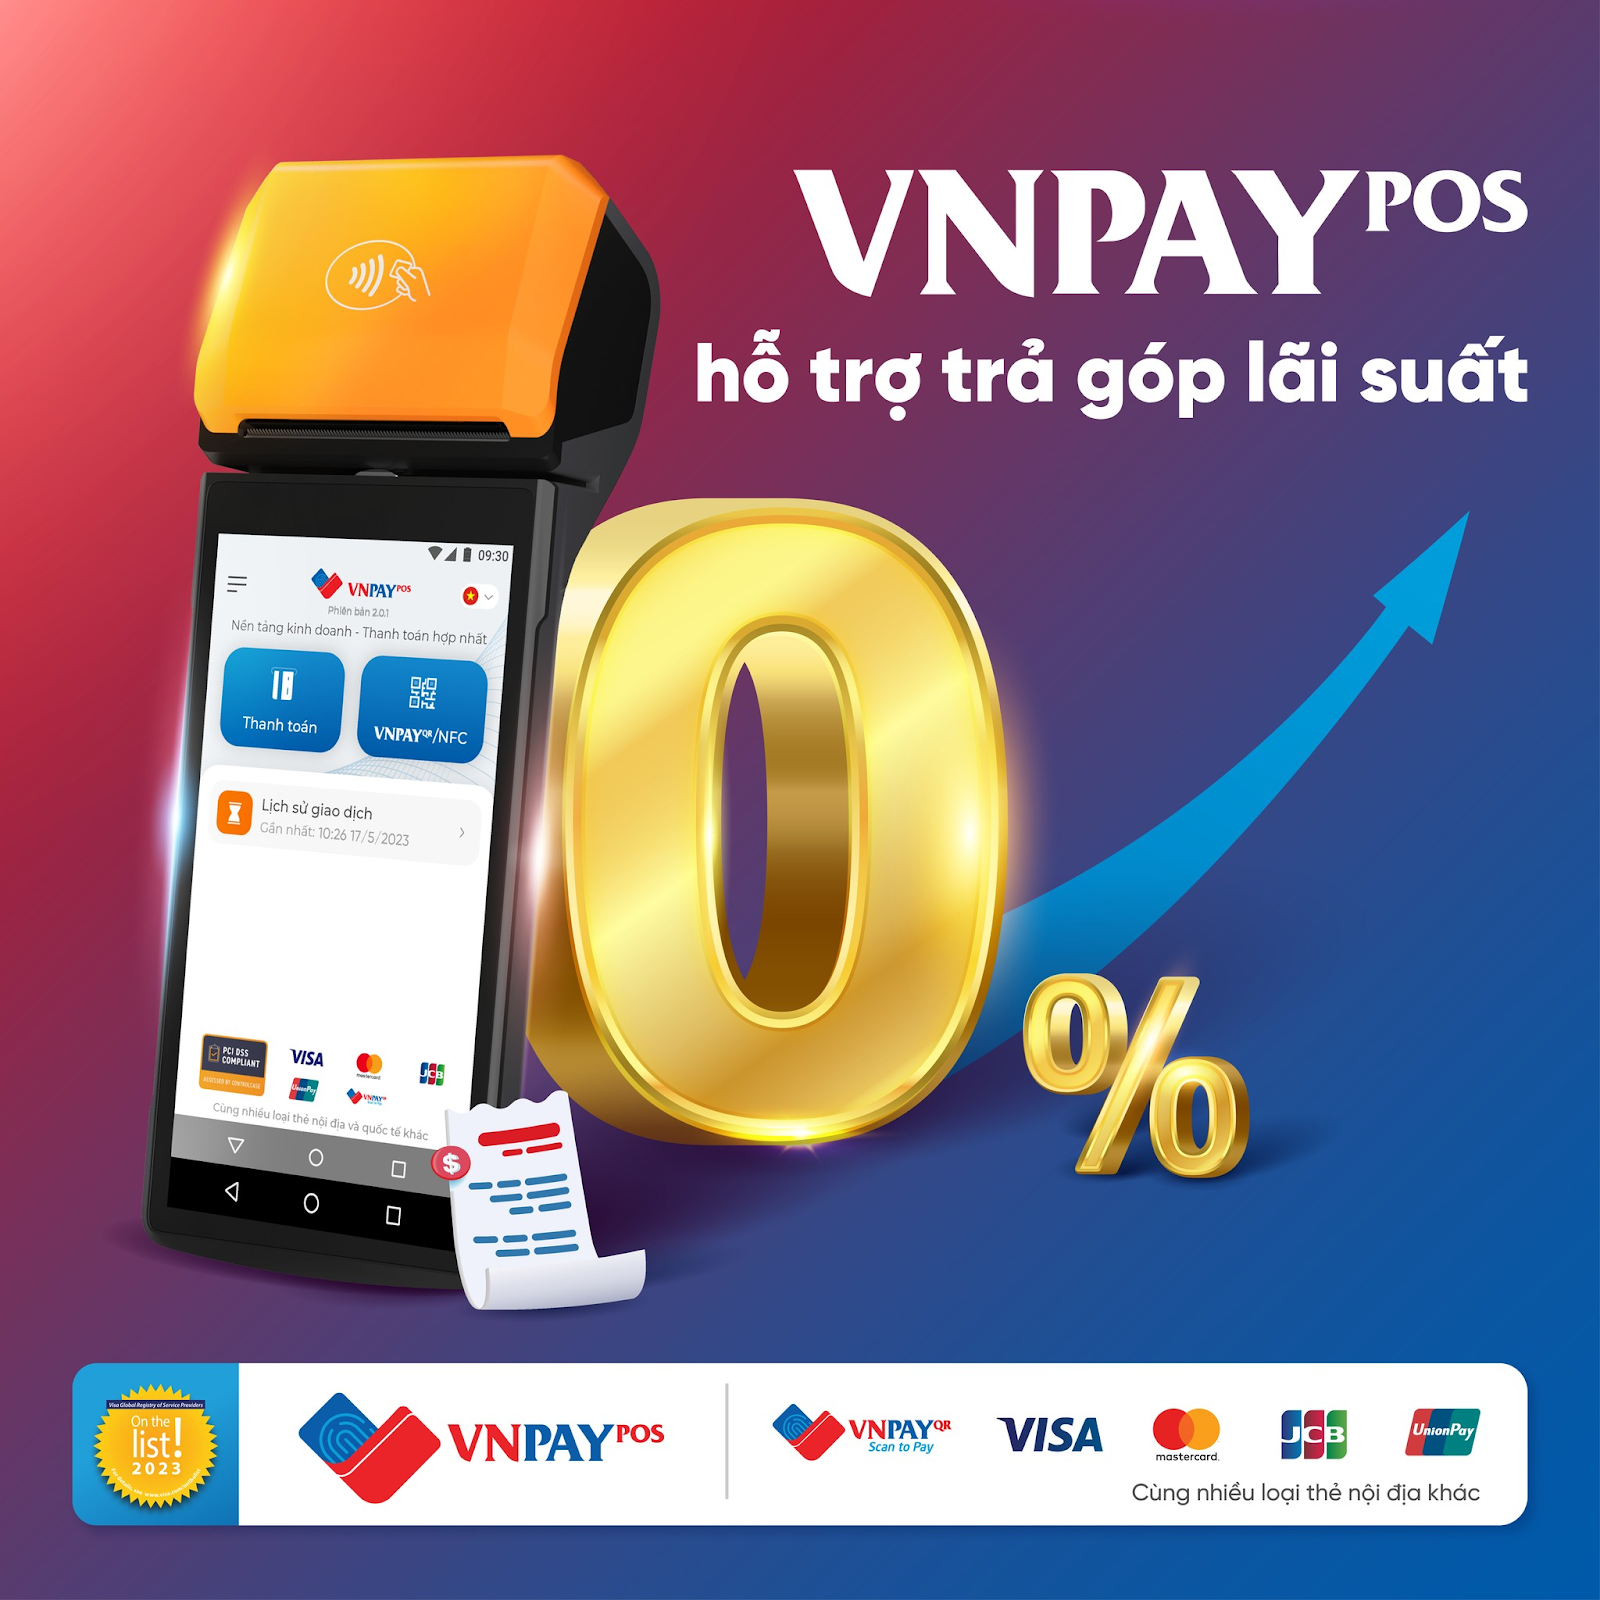 Trả góp lãi suất 0% bằng thẻ tín dụng qua VNPAY-POS